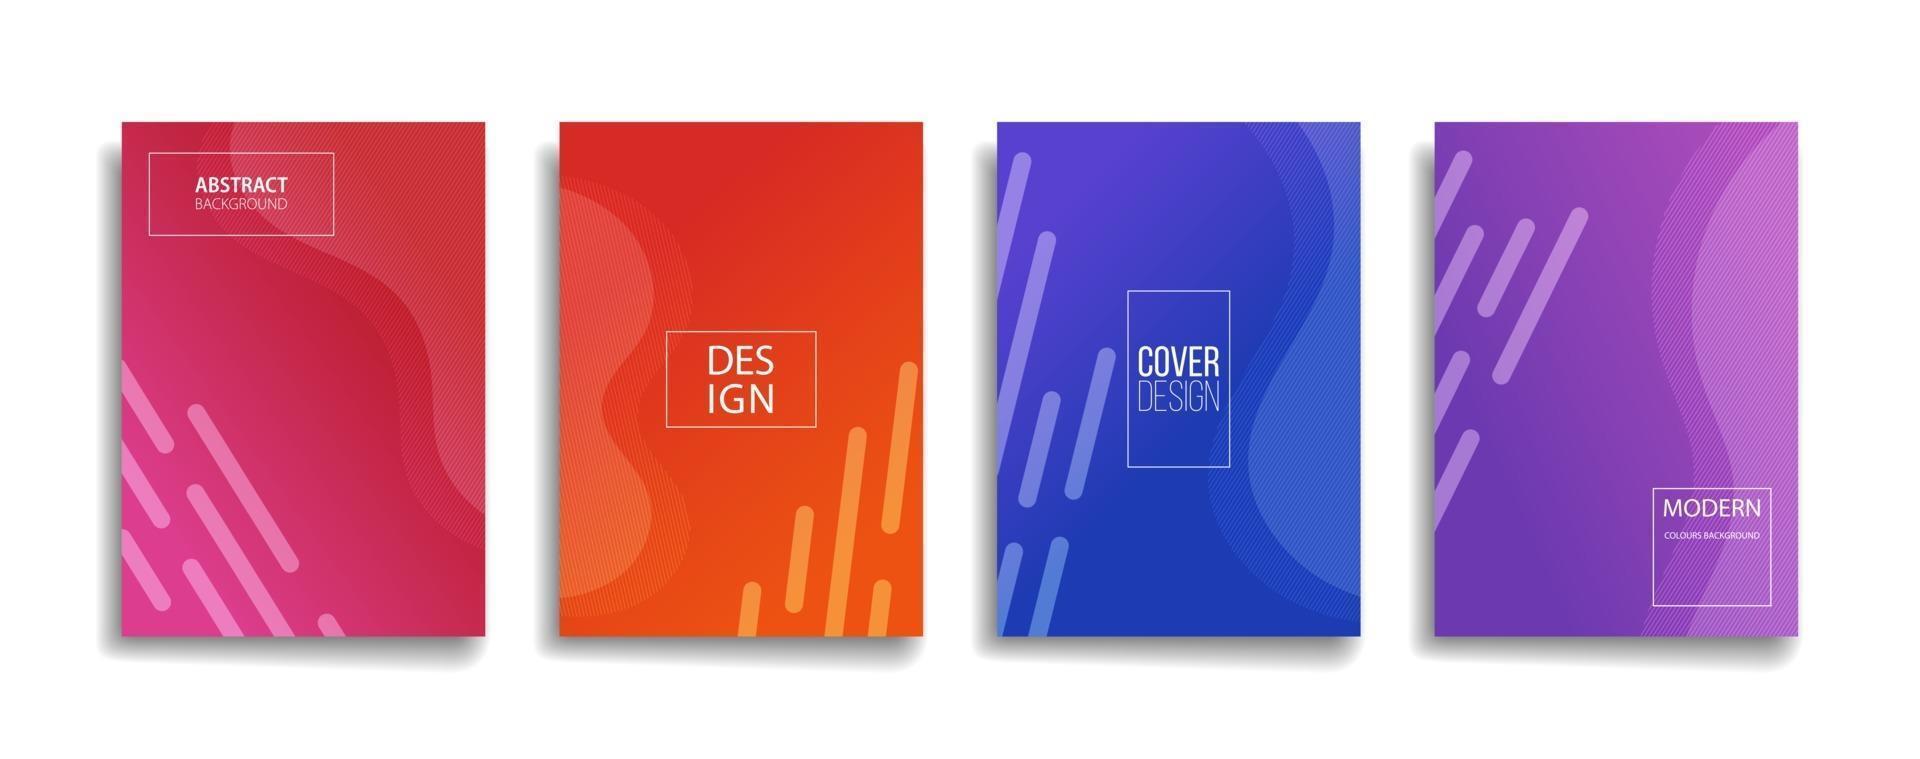 helle Farbverlaufsfarbe abstraktes Linienmuster Hintergrundabdeckungsdesign. modernes Hintergrunddesign mit trendiger und lebendiger, lebendiger Farbe. blau violett rot orange grün Plakat Poster Vektor Cover Vorlage.